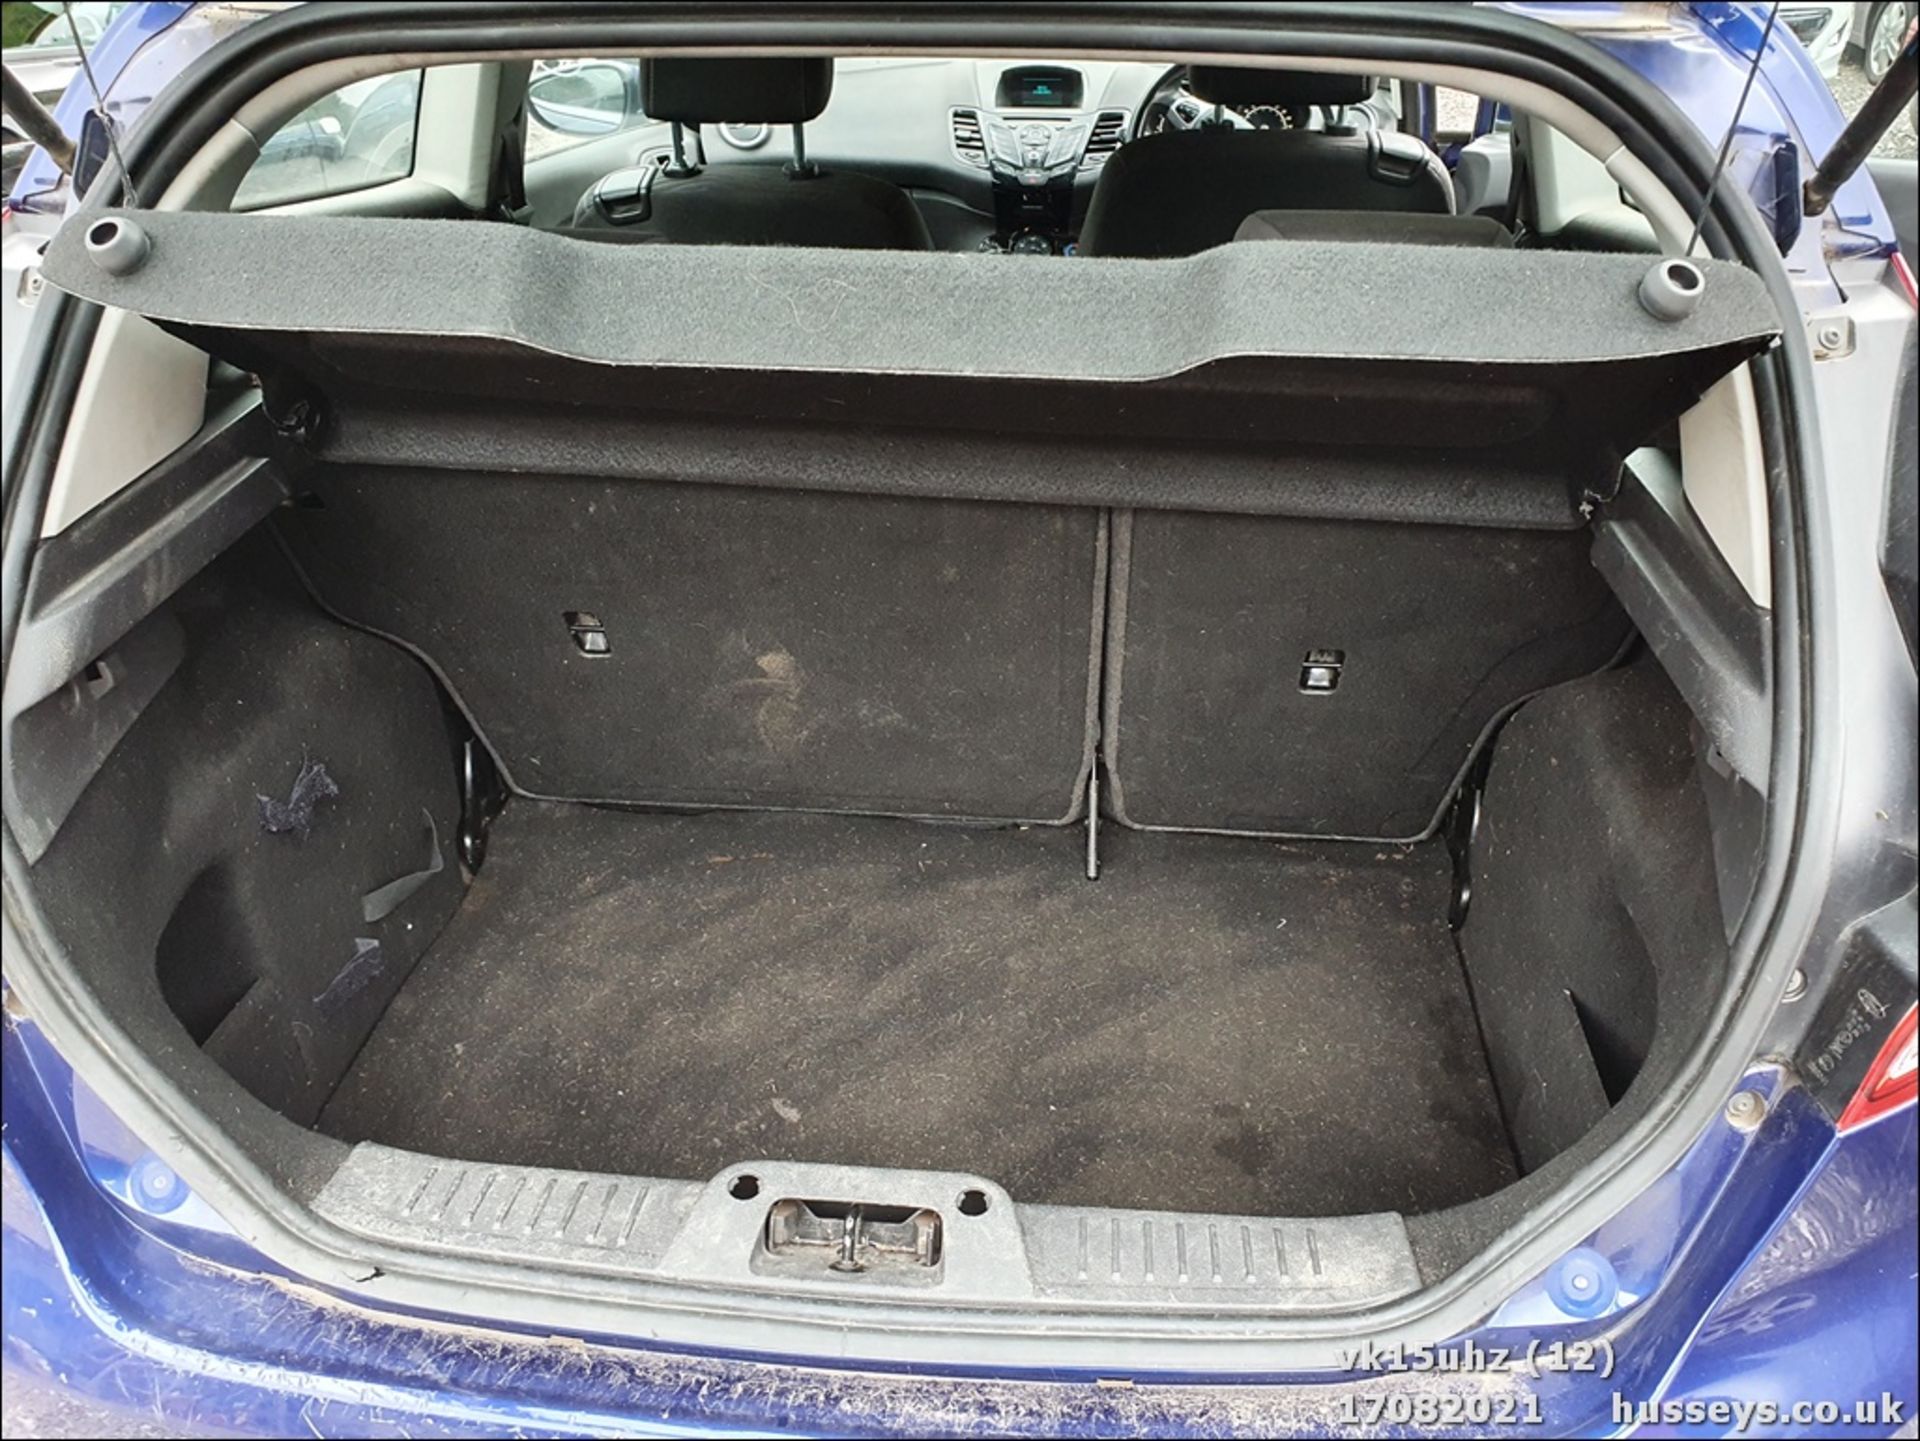 15/15 FORD FIESTA ZETEC - 1242cc 3dr Hatchback (Blue, 111k) - Image 12 of 15